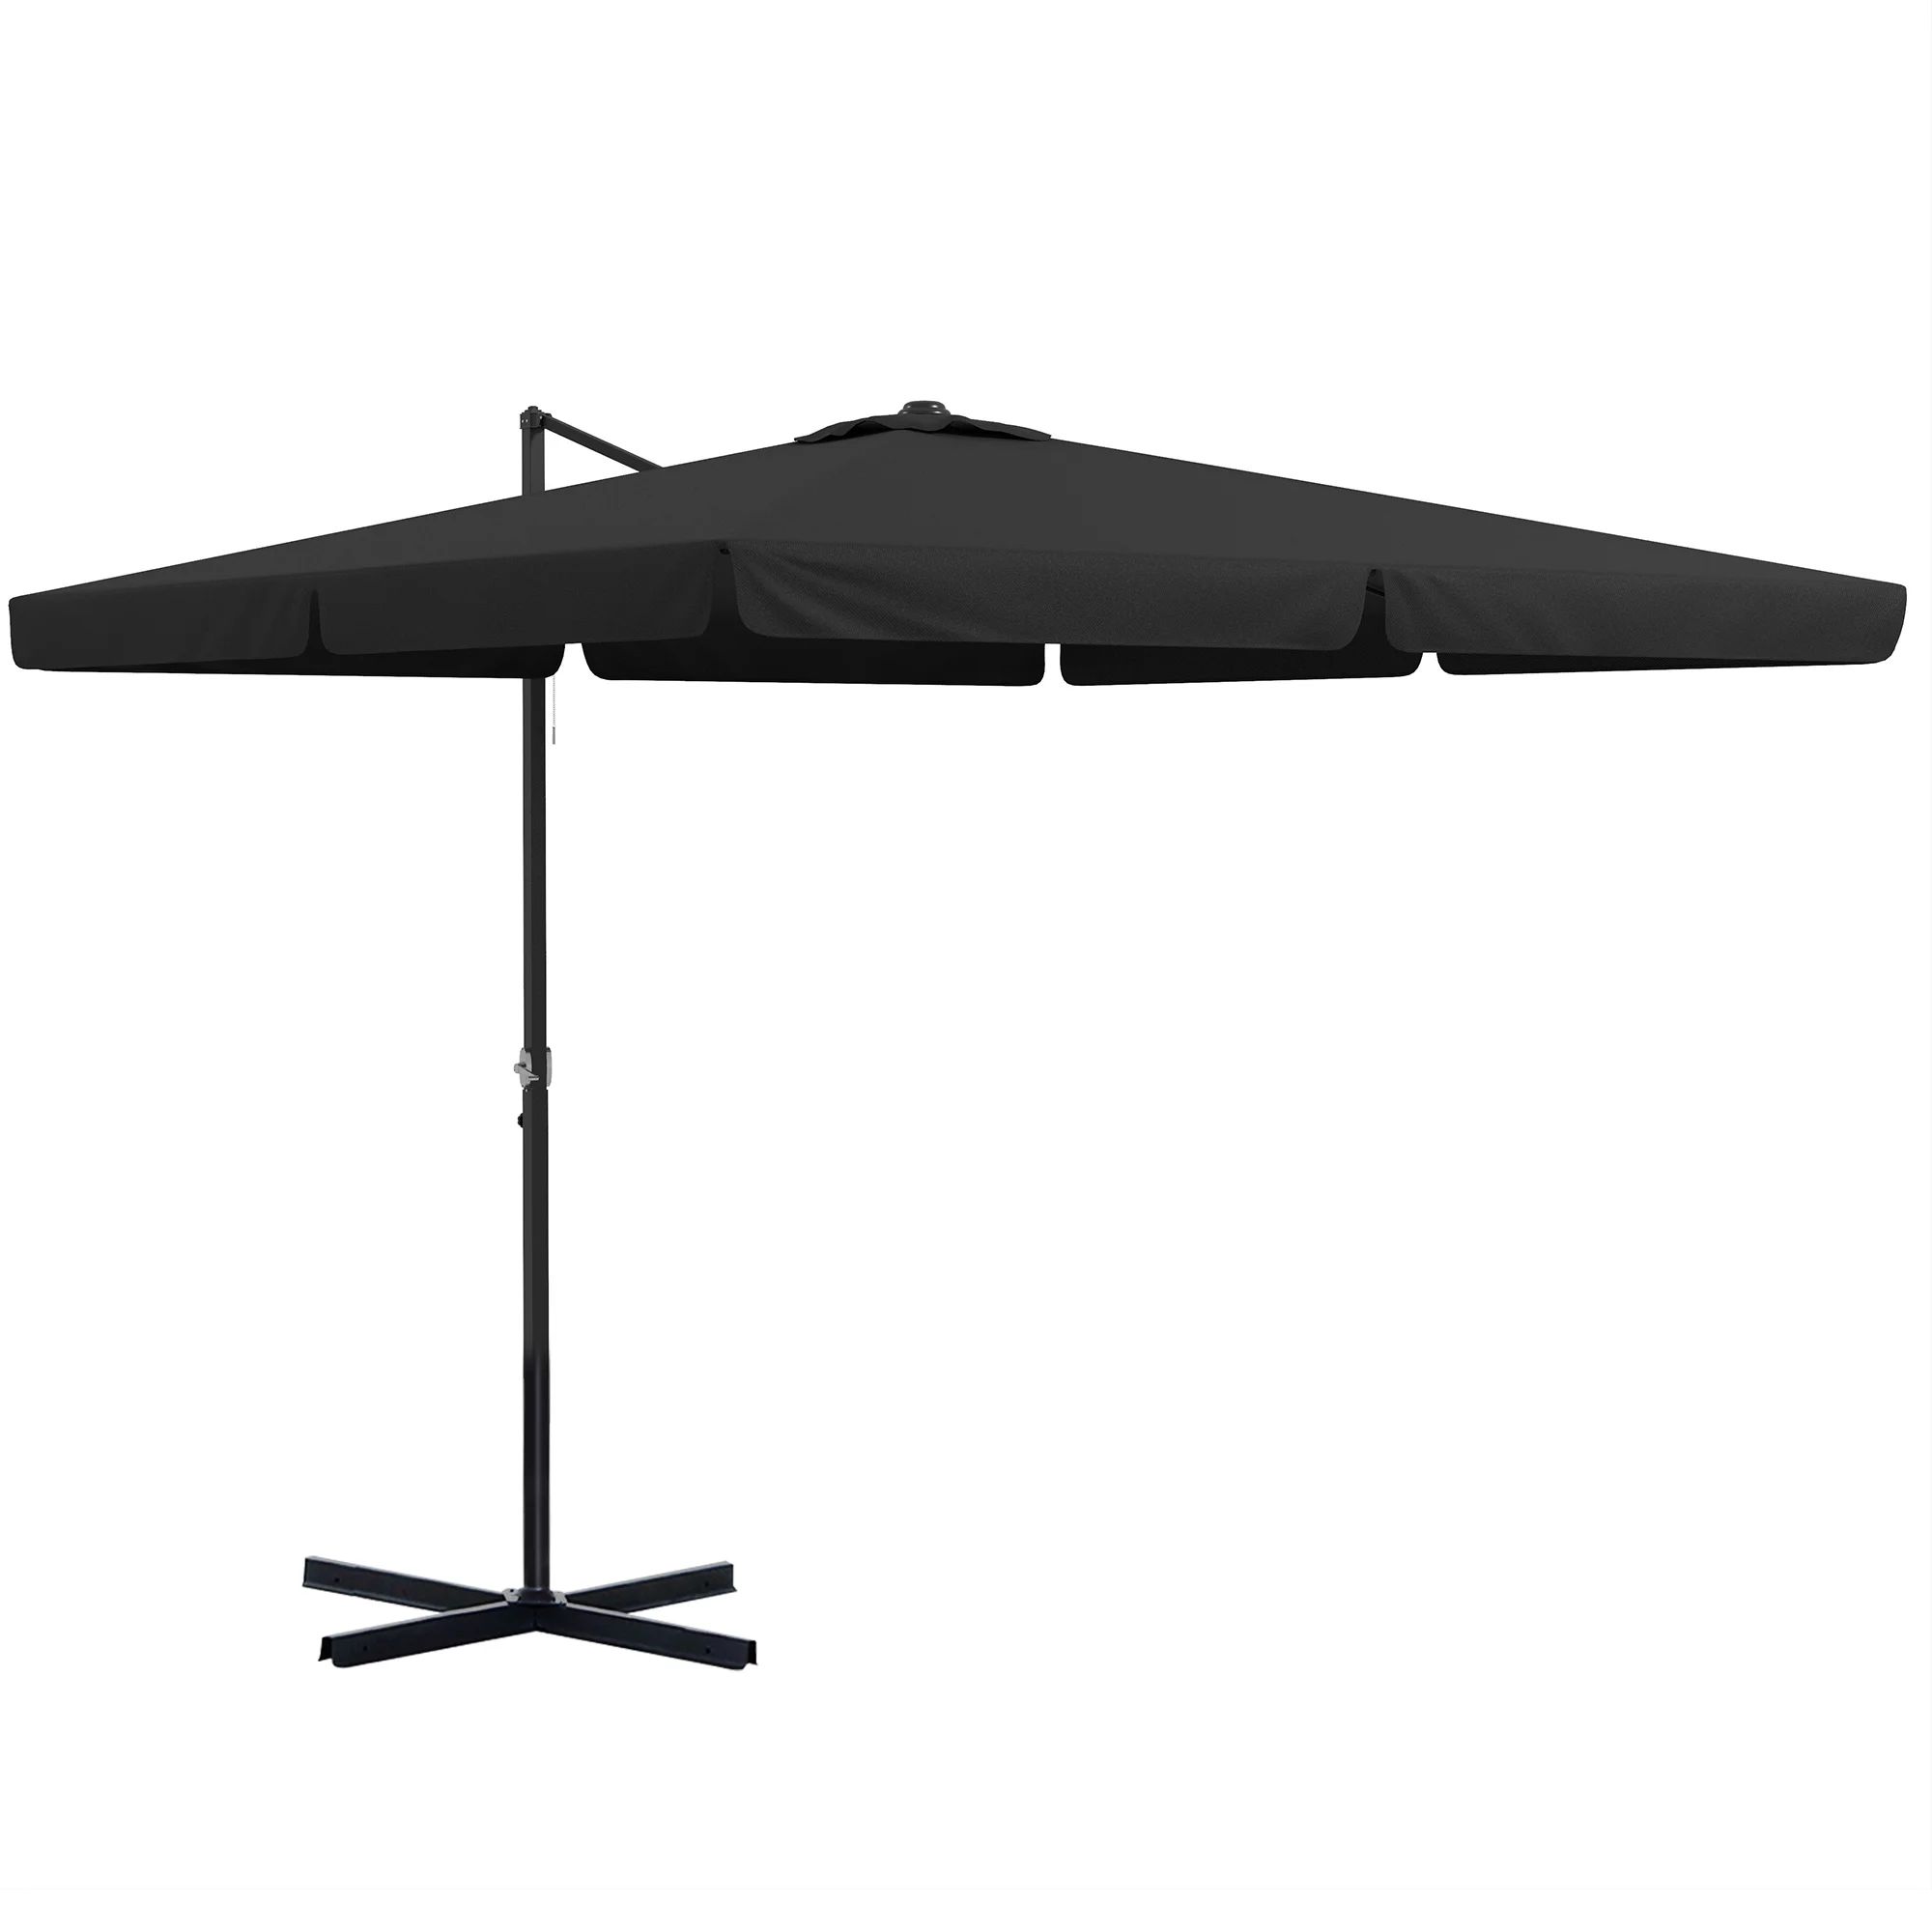 Outsunny 10' Cantilever Patio Umbrella with Tilt, Crank, Cross Base, Gray | Walmart (US)